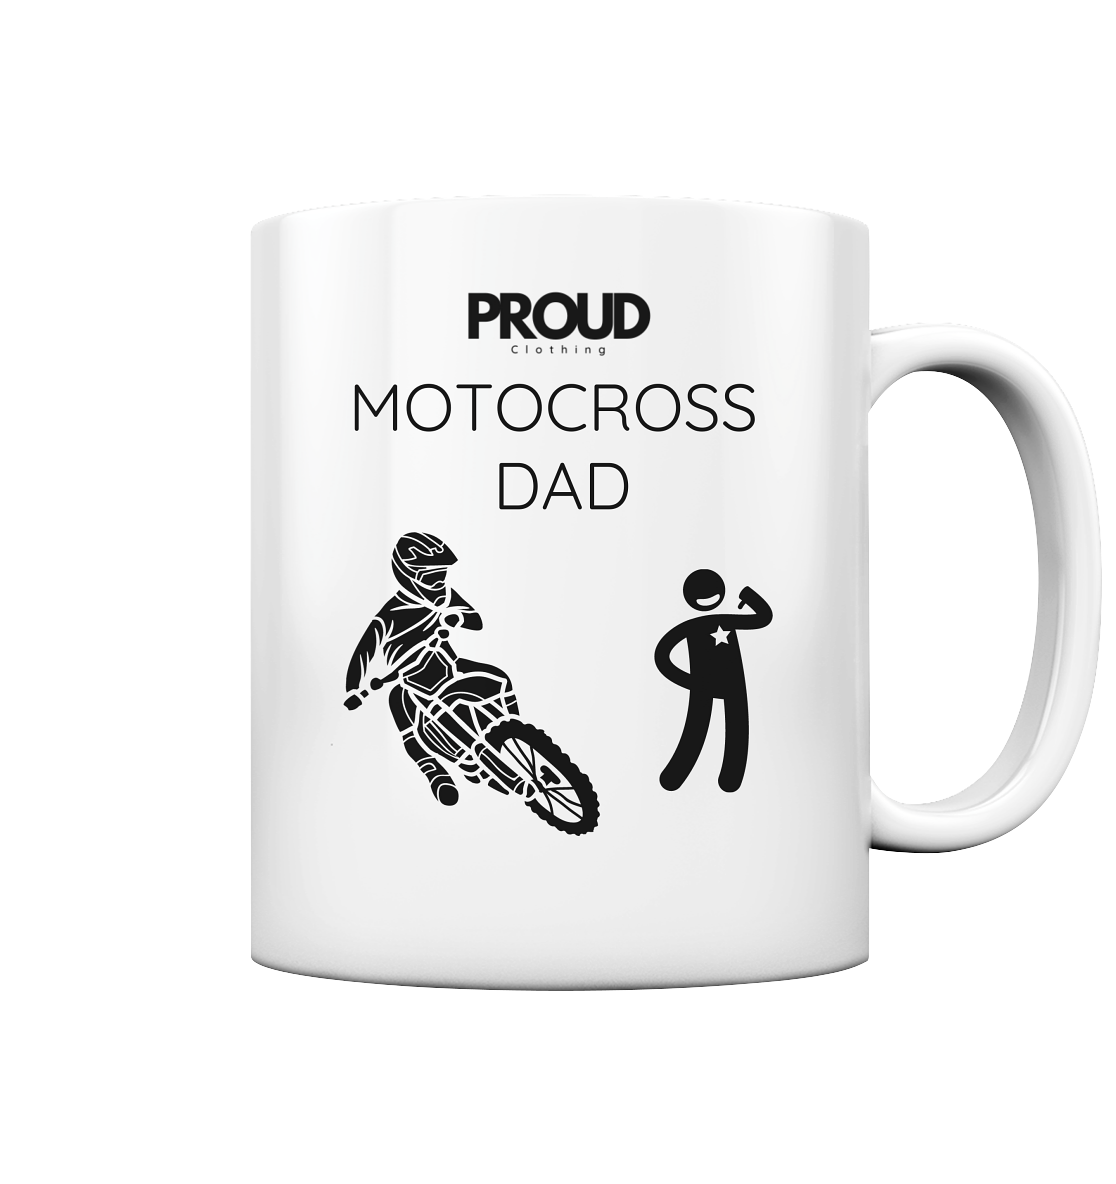 Motocross DAD - Tasse glossy